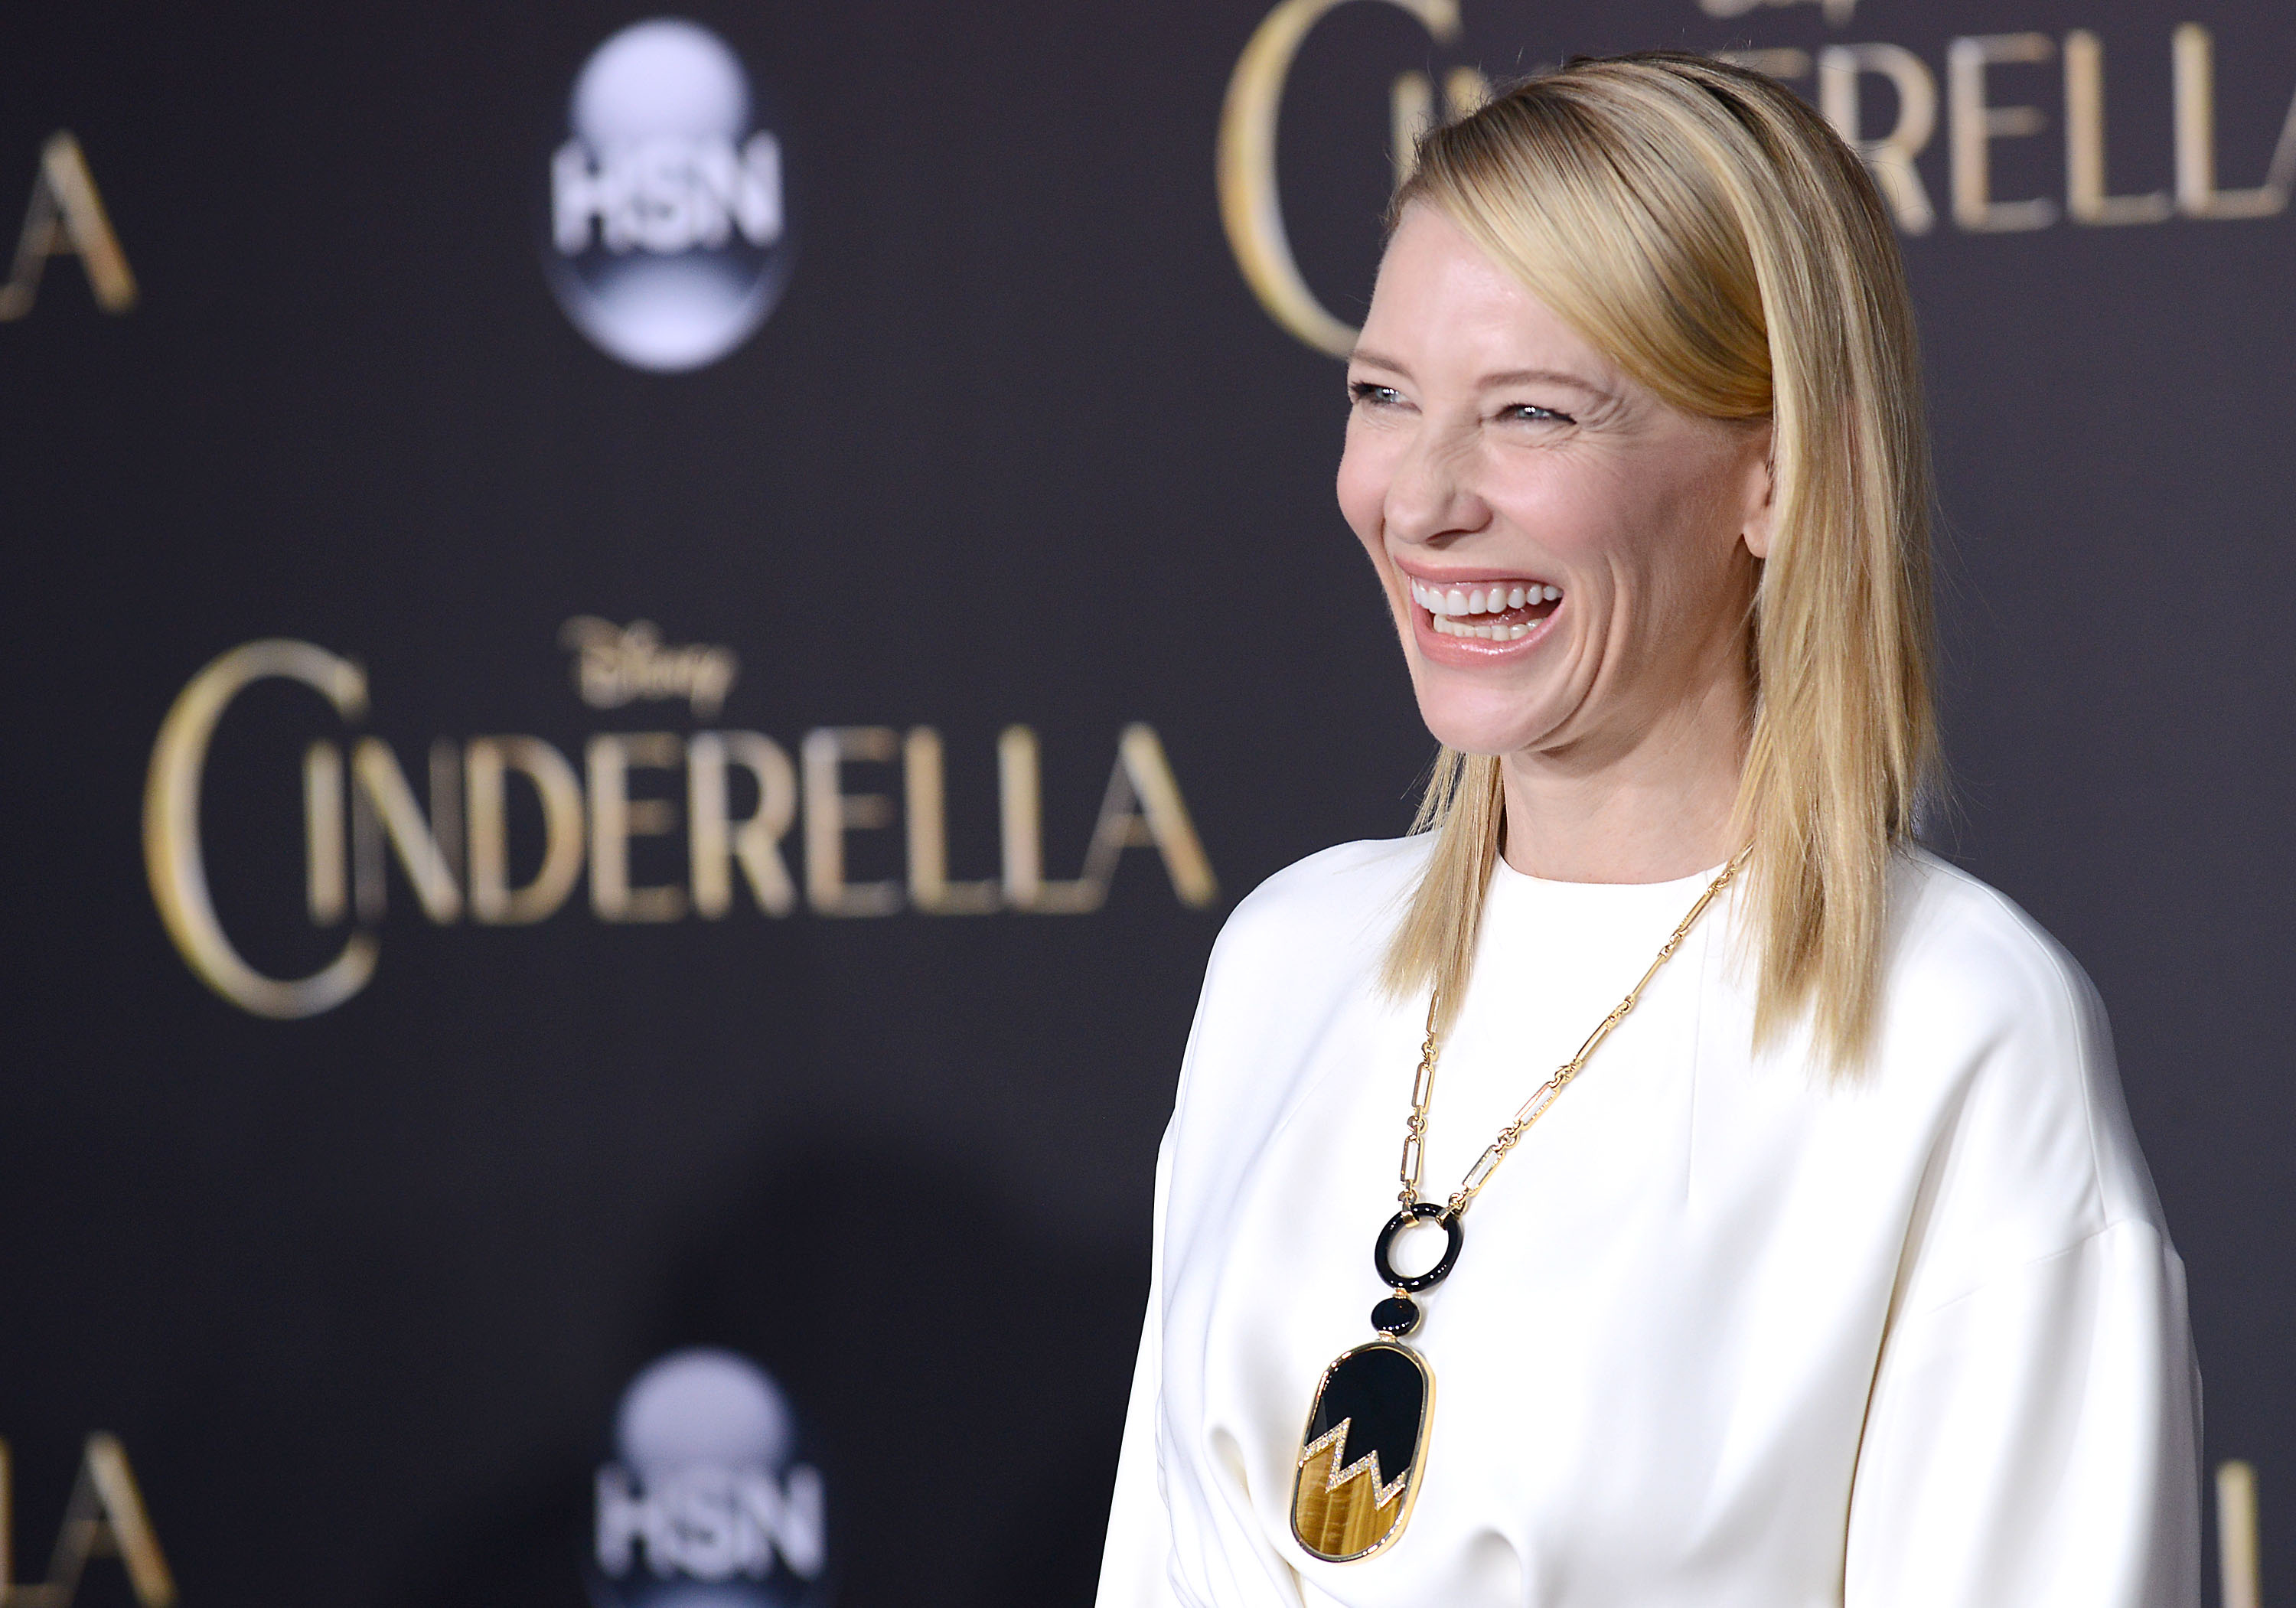 WATCH: Cate Blanchett talks Blue Jasmine and Cinderella